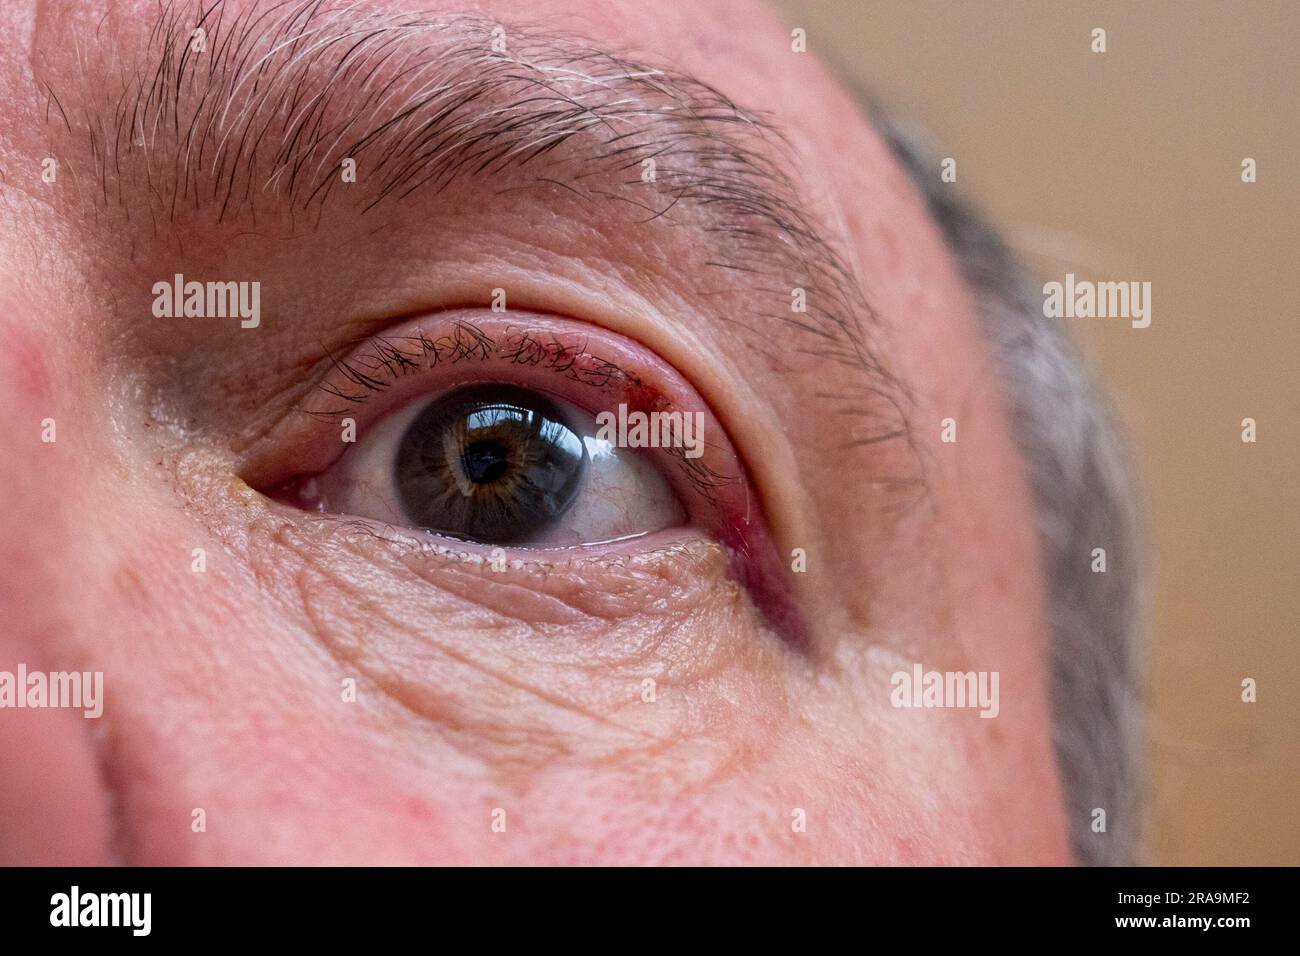 Nahaufnahme eines menschlichen Auges nach einer Operation zur Entfernung eines Papilloms (kleiner Knoten) aus seinem Augenlid, London, UK. Stockfoto